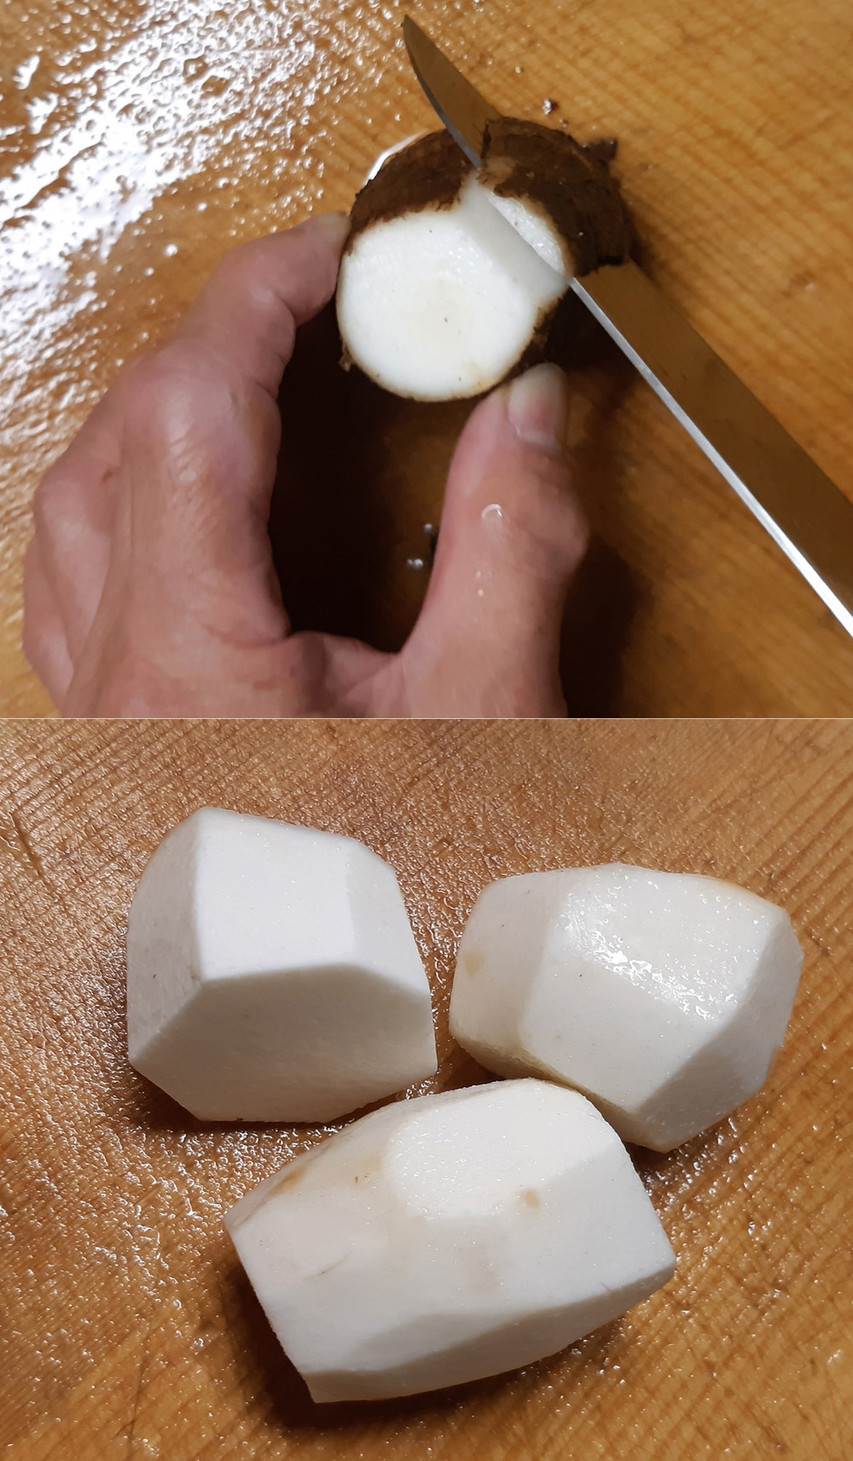 里芋の皮を生で安全・カンタンに剥く方法の画像